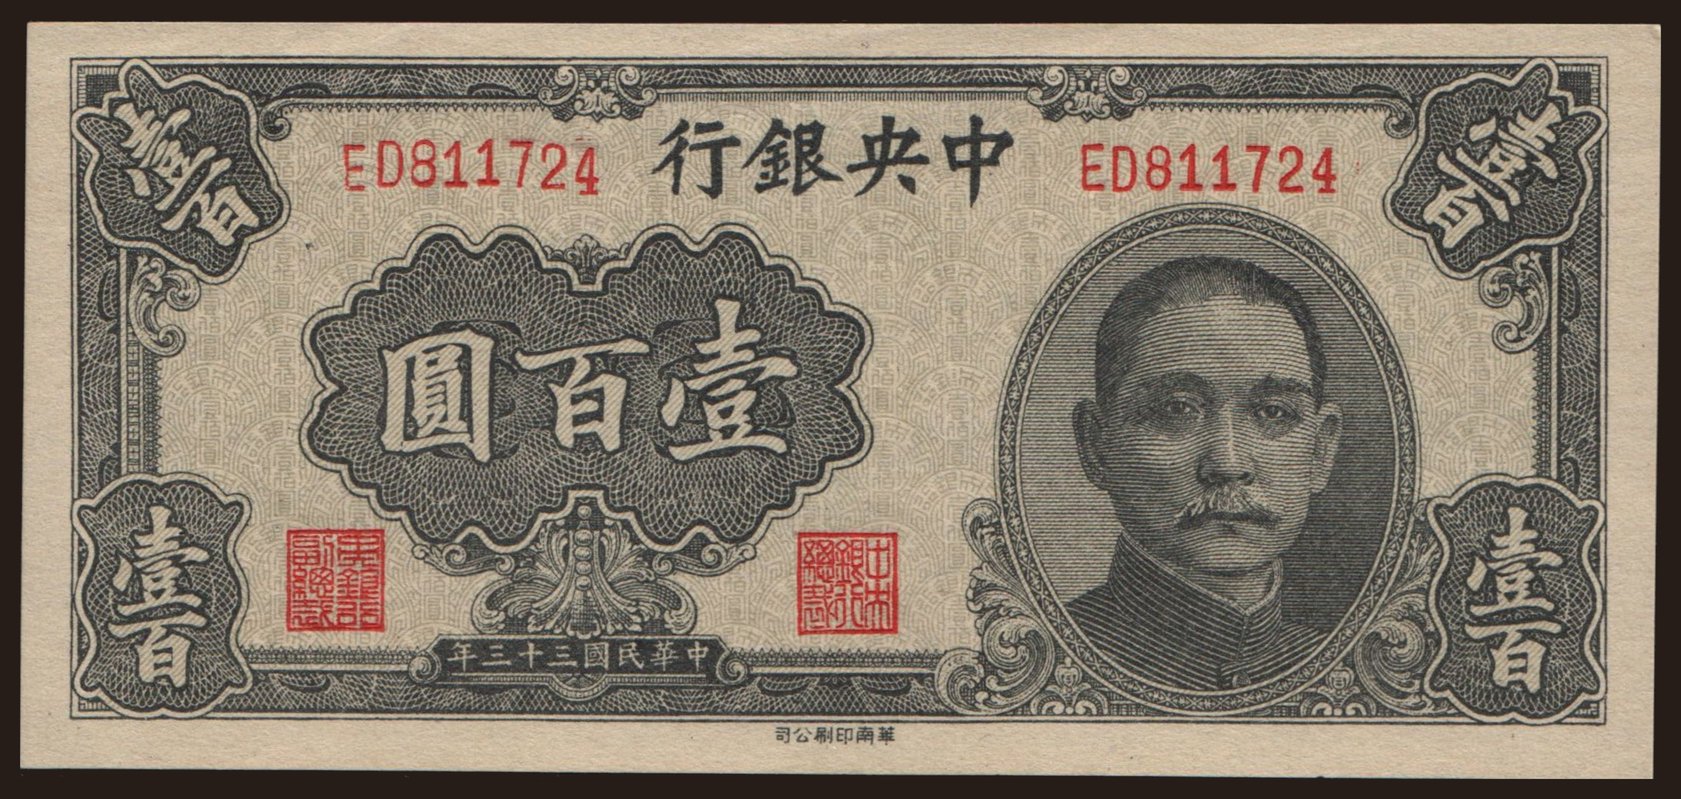 Central Bank of China, 100 yuan, 1944